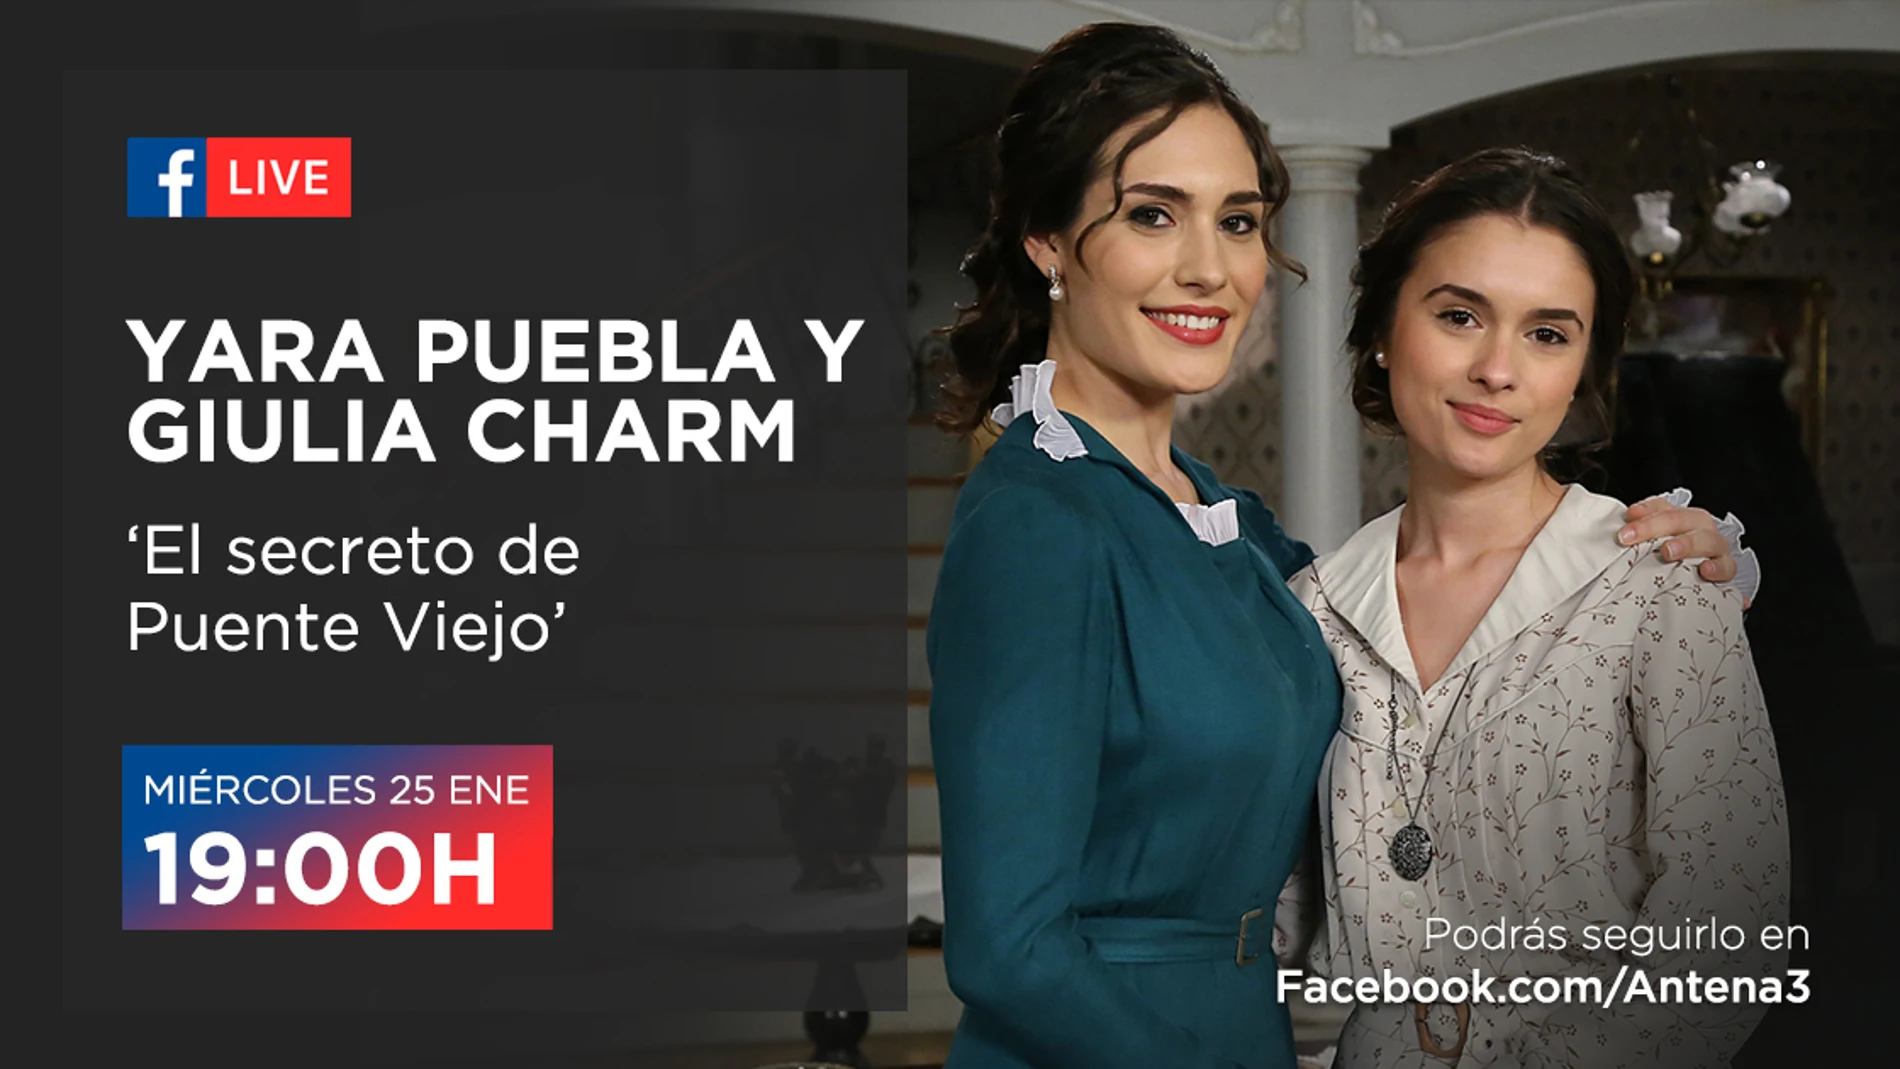 Celebramos los 1.500 capítulos junto a Yara Puebla y Giulia Charm con un Facebook Live